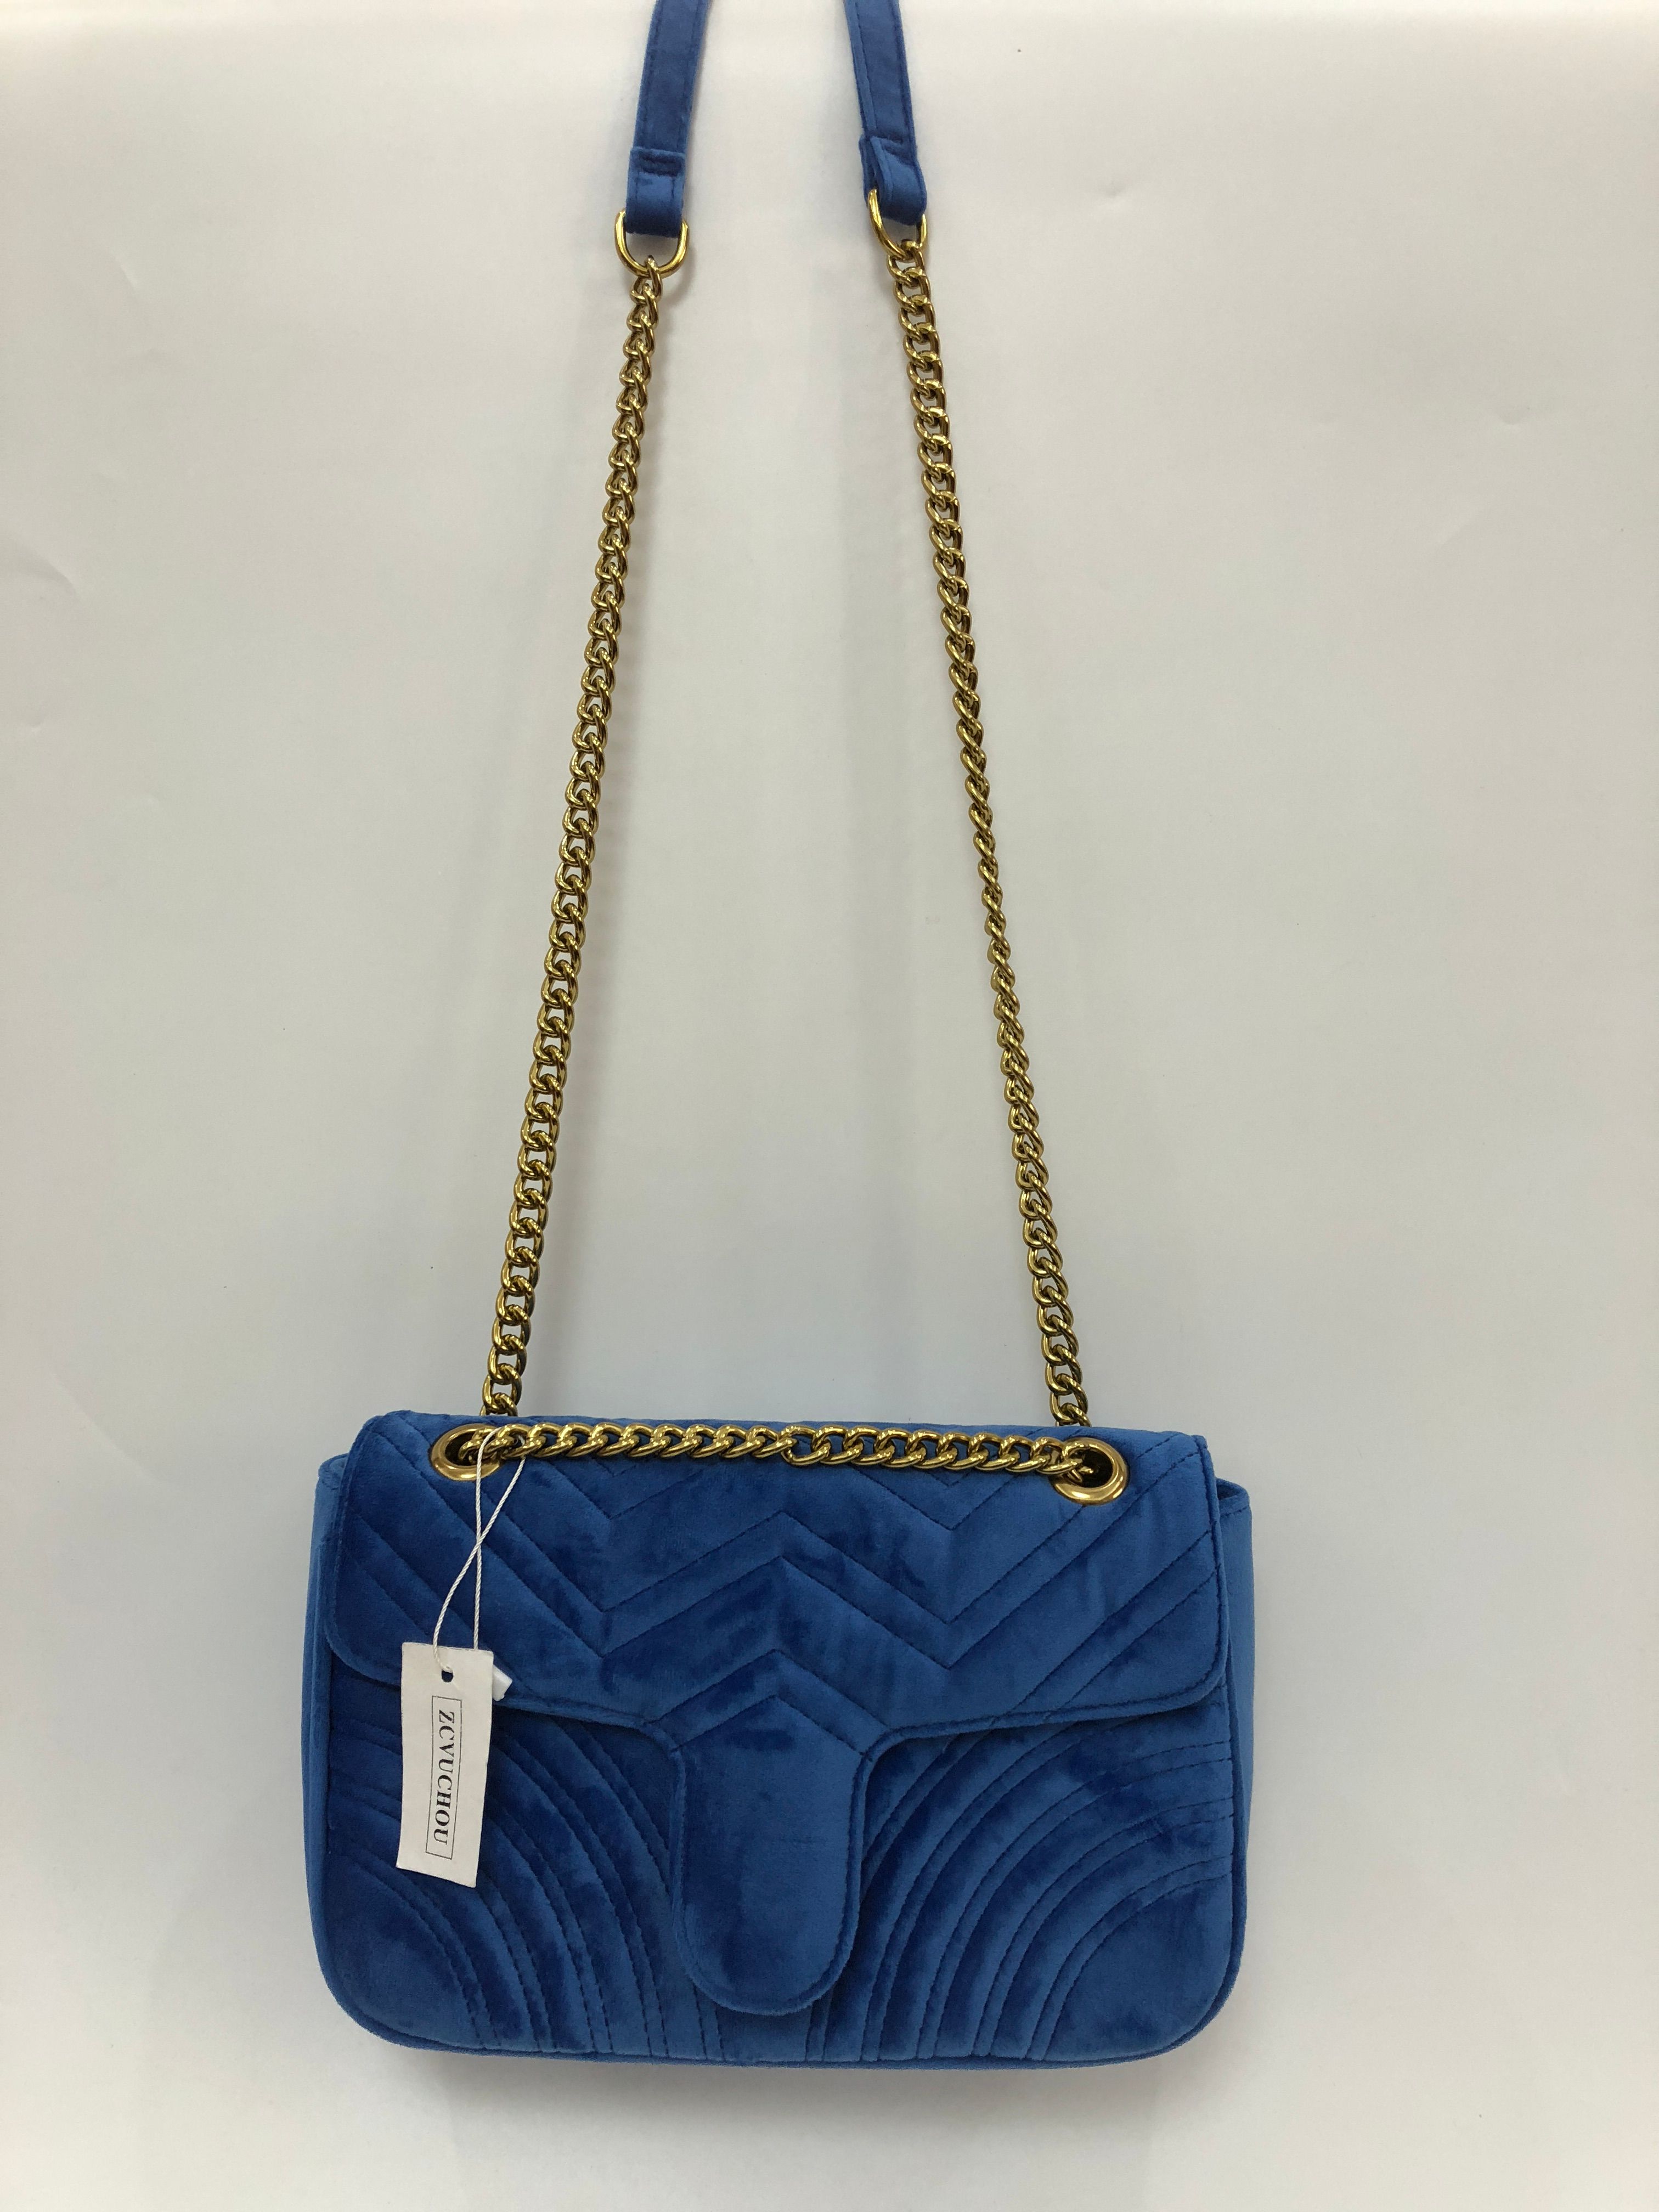 Designer Marmont Velvet Bags Handbags Women Shoulder Bag Designer Handbags  Purses Chain Fashion Crossbody Bag Dhgate Bag From Juan551806, $25.65